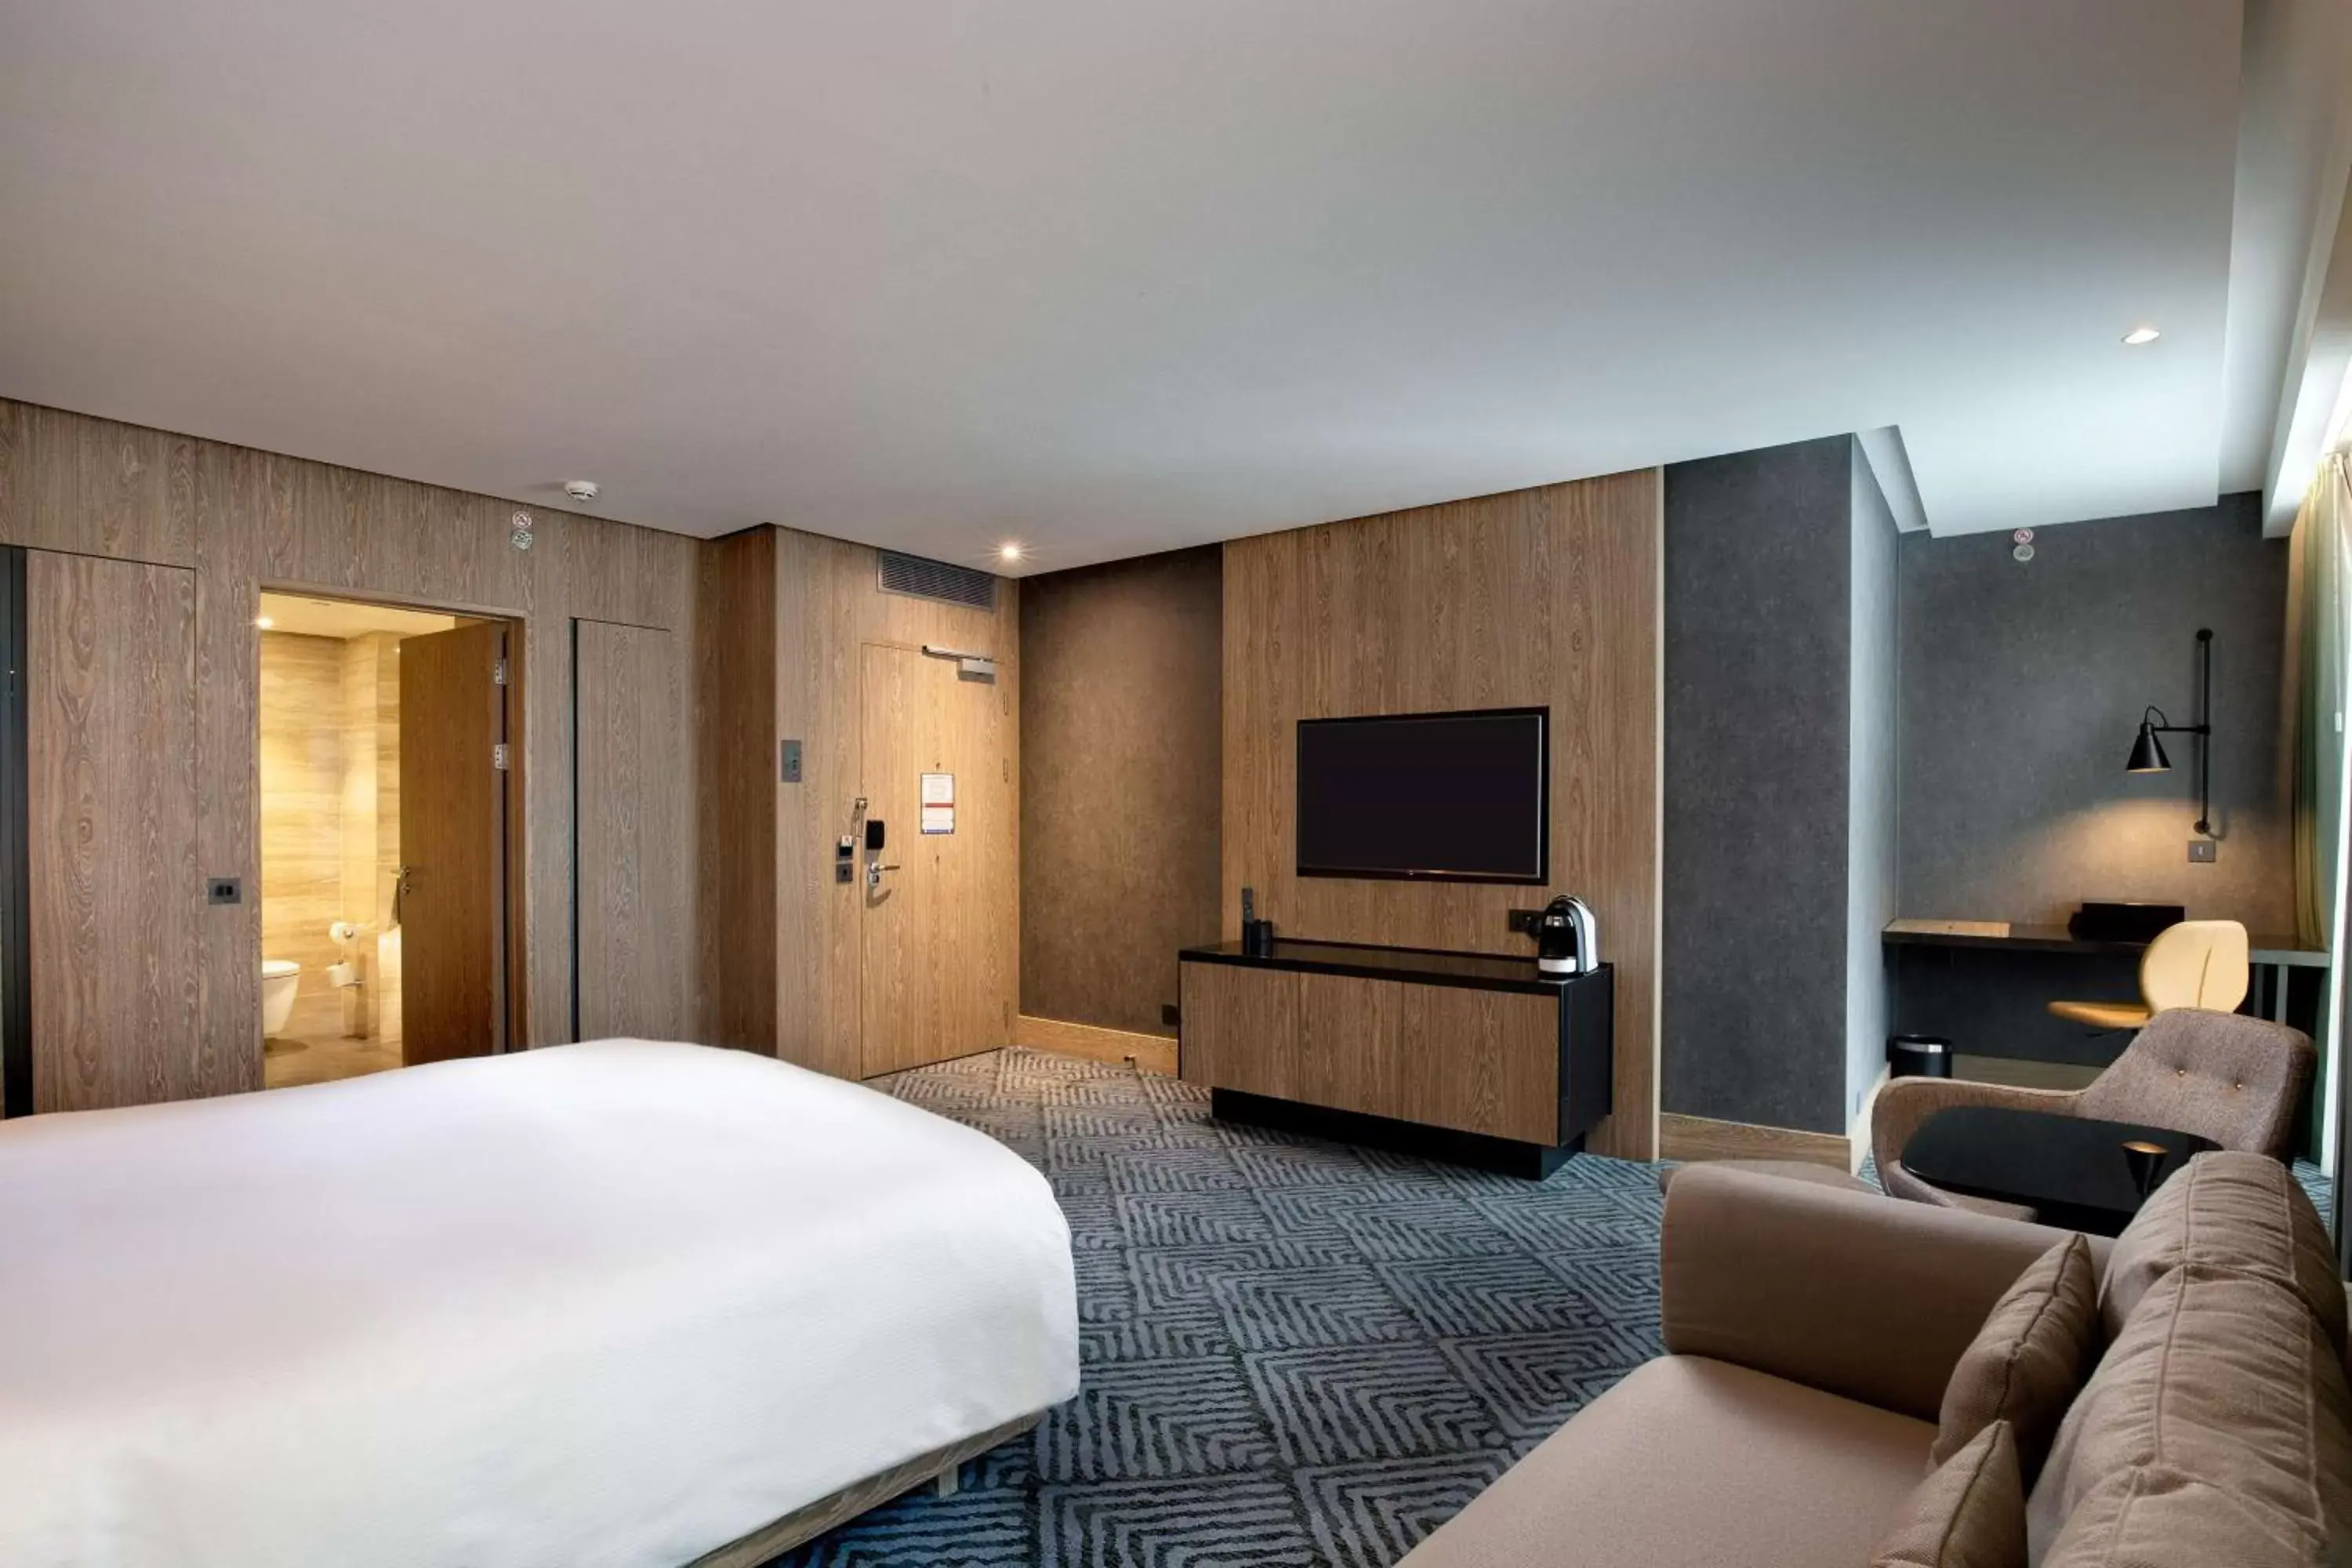 Bedroom, TV/Entertainment Center in Hilton London Bankside